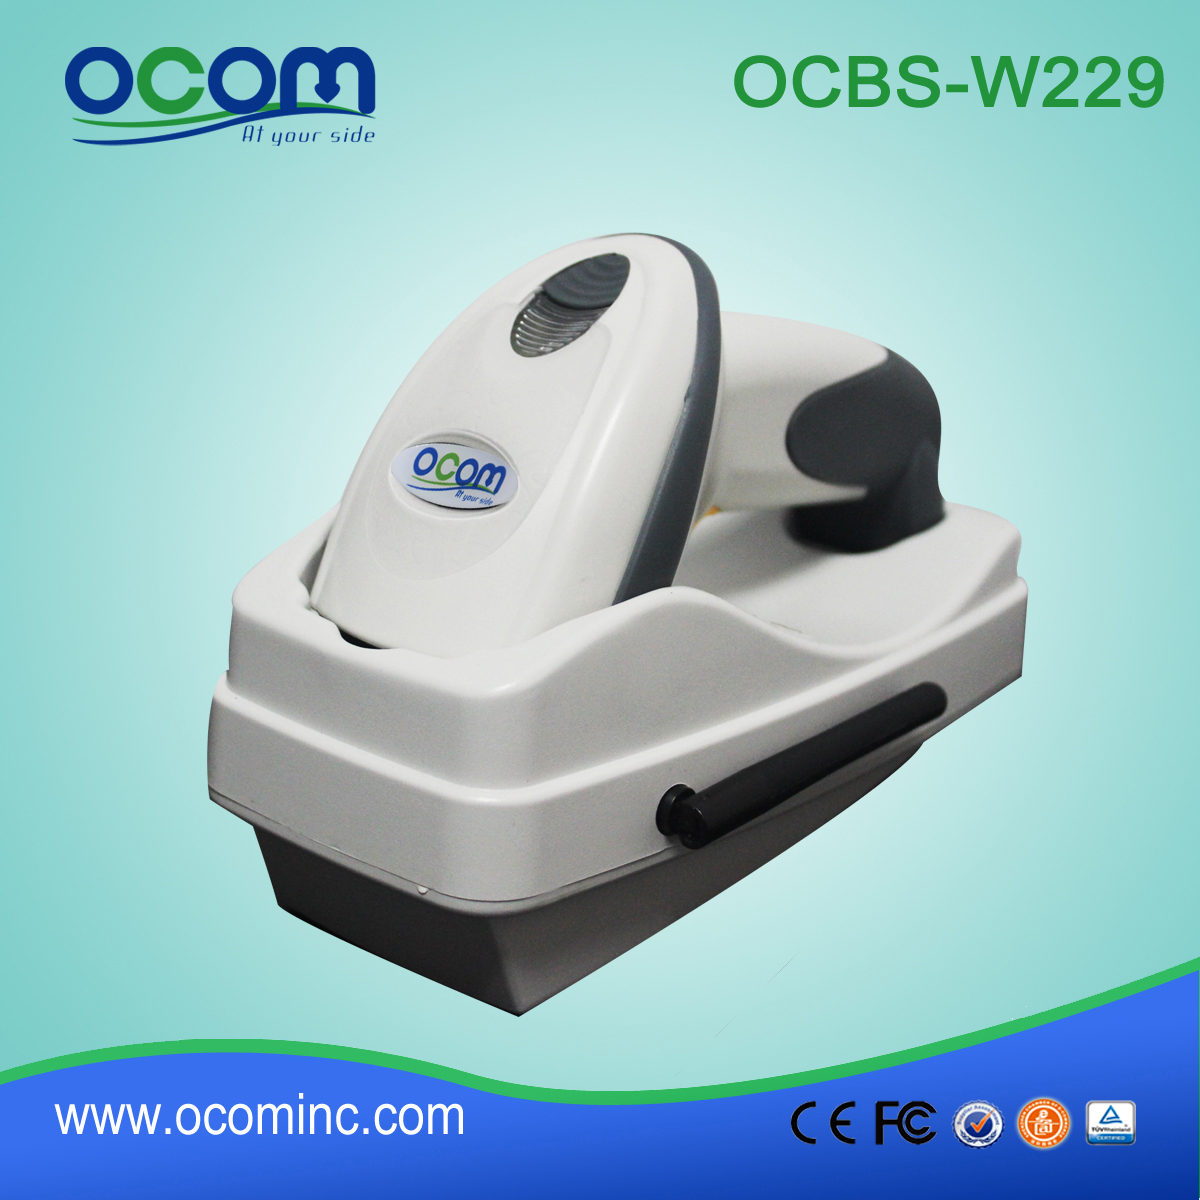 无线二维条码扫描器(OCBS-W229)